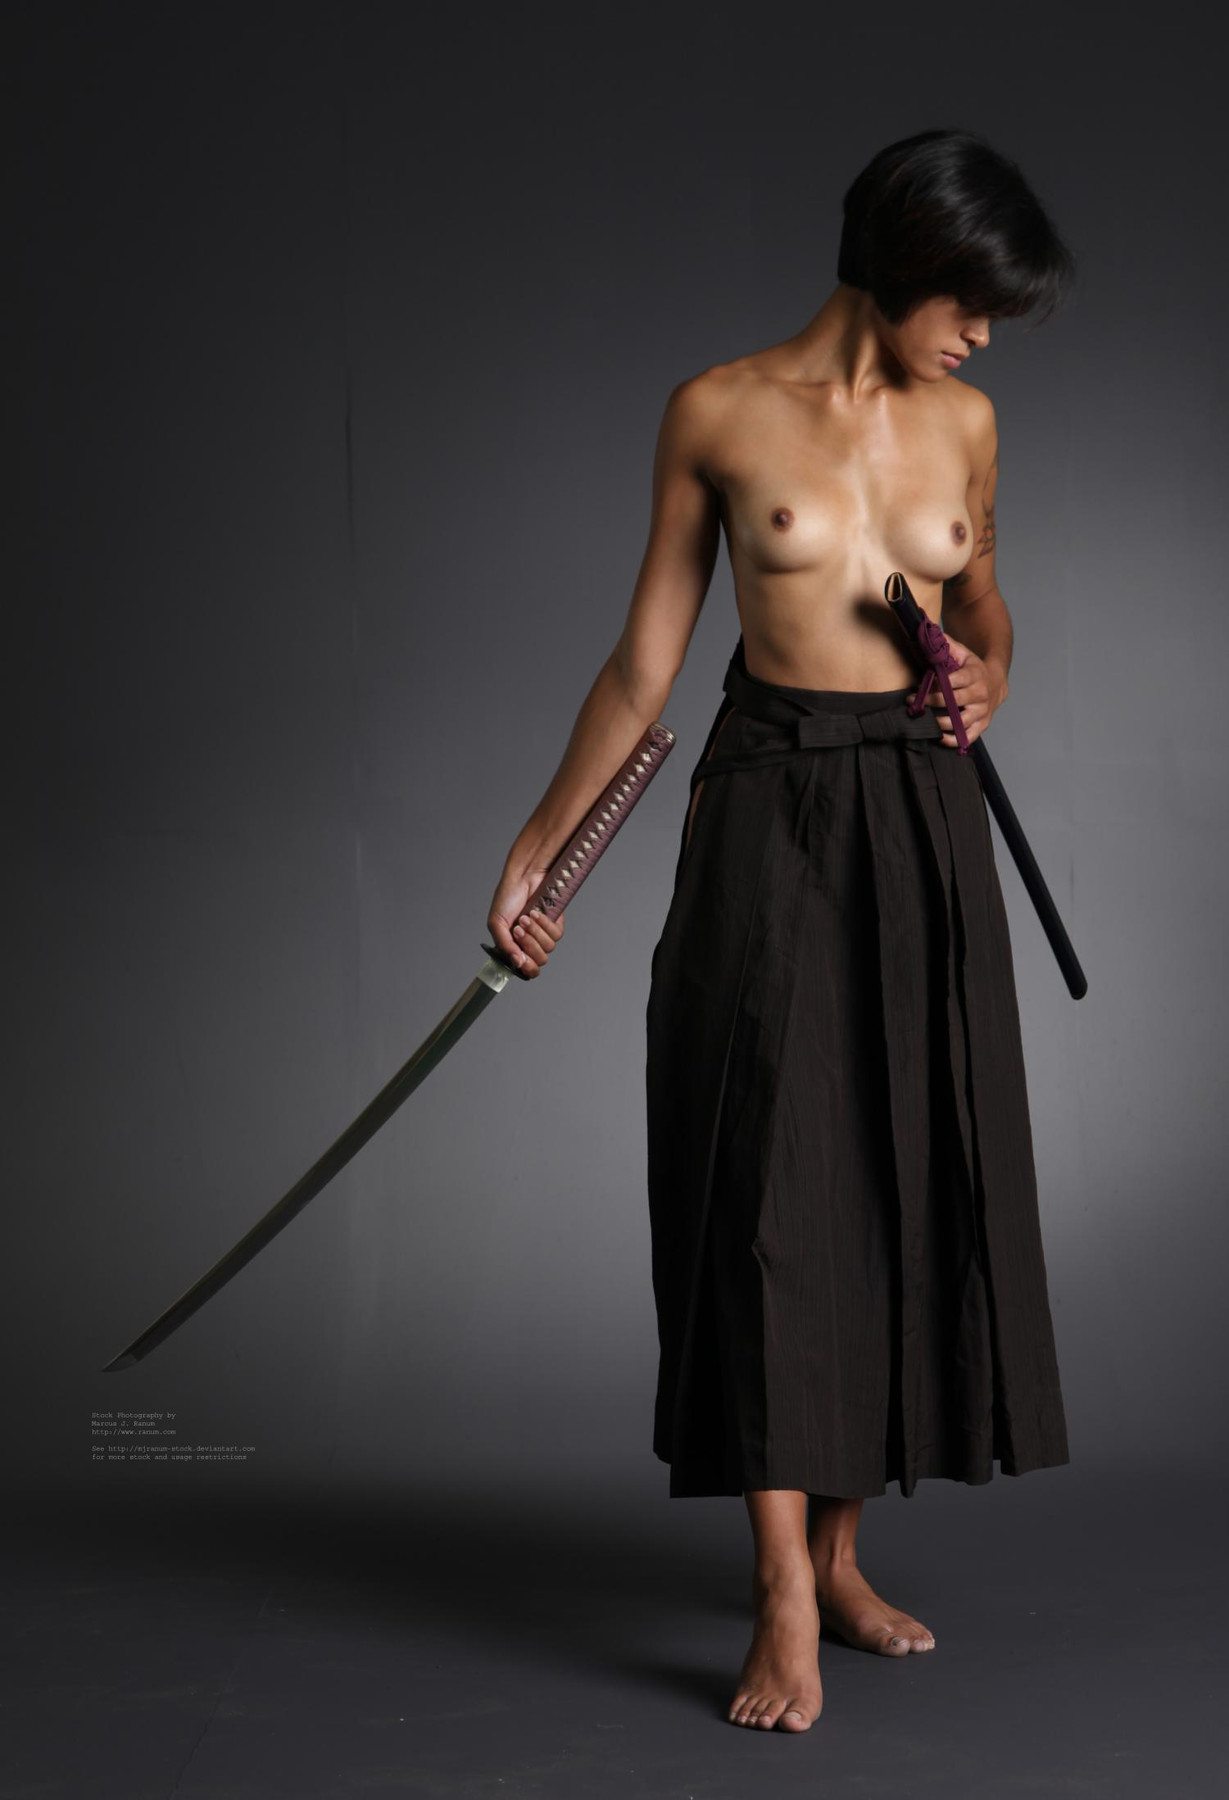 голая японка с мечом фото 4